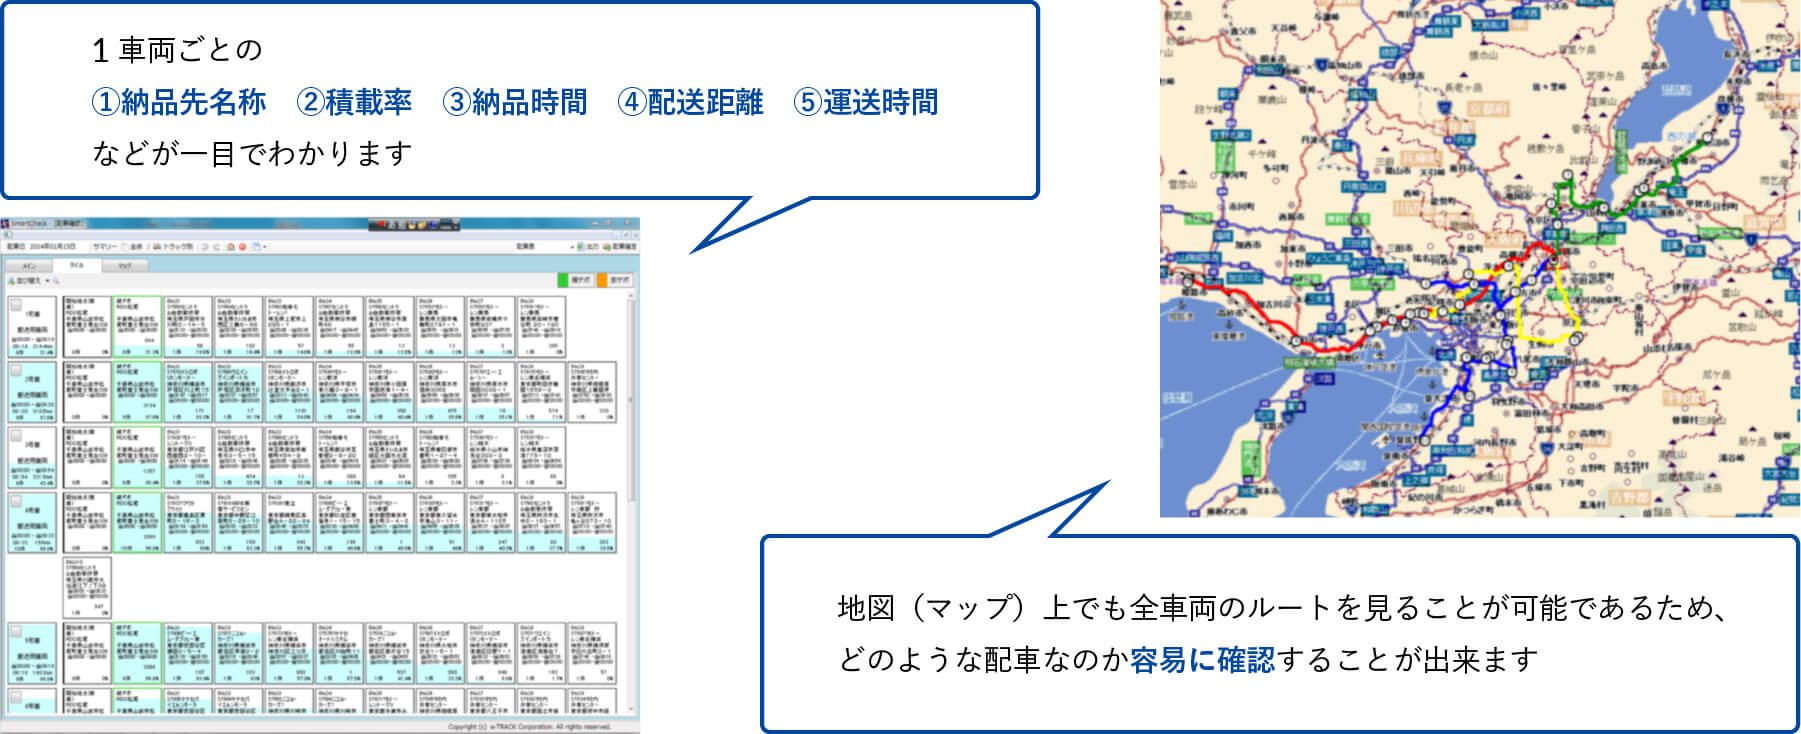 配車結果は、運行表や地図表示で確認することができます。